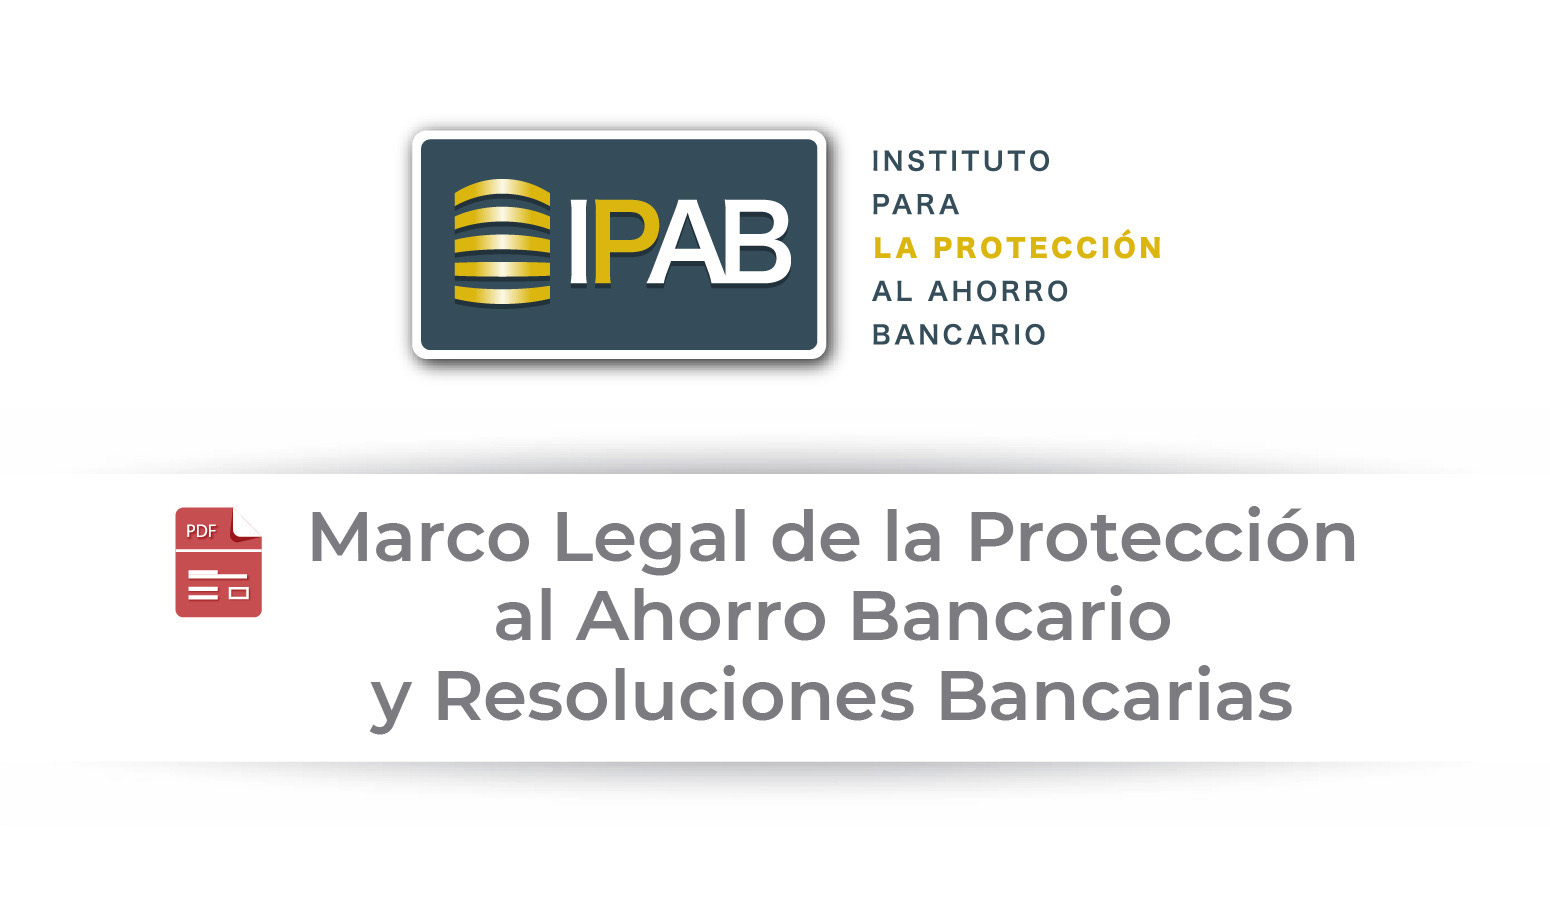 Marco Legal de la Protección al Ahorro Bancario y Resoluciones Bancarias.